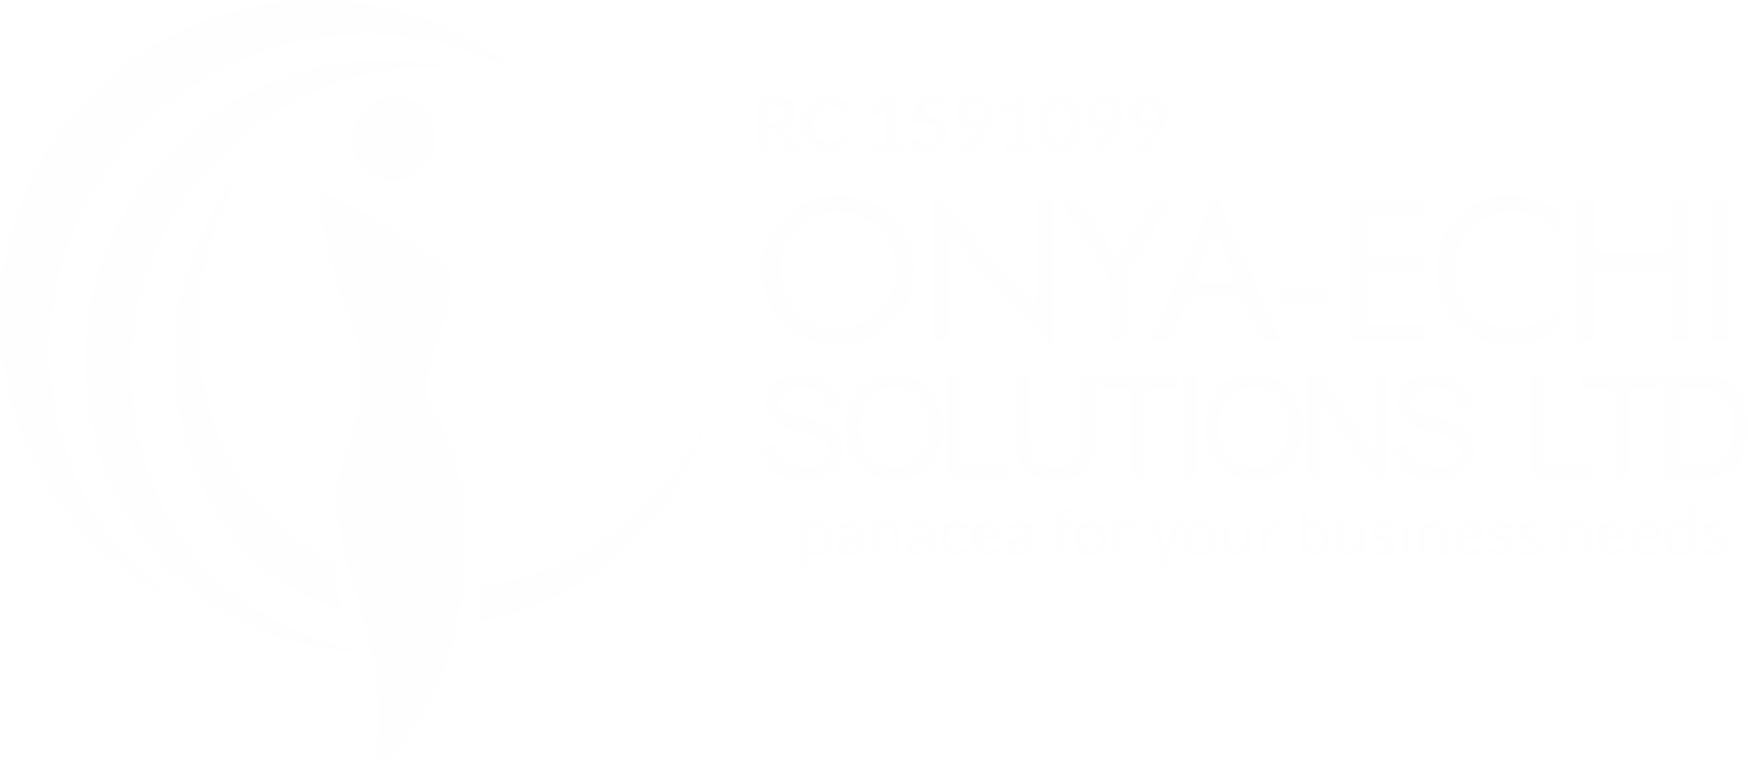 Onya-Echi Solutions